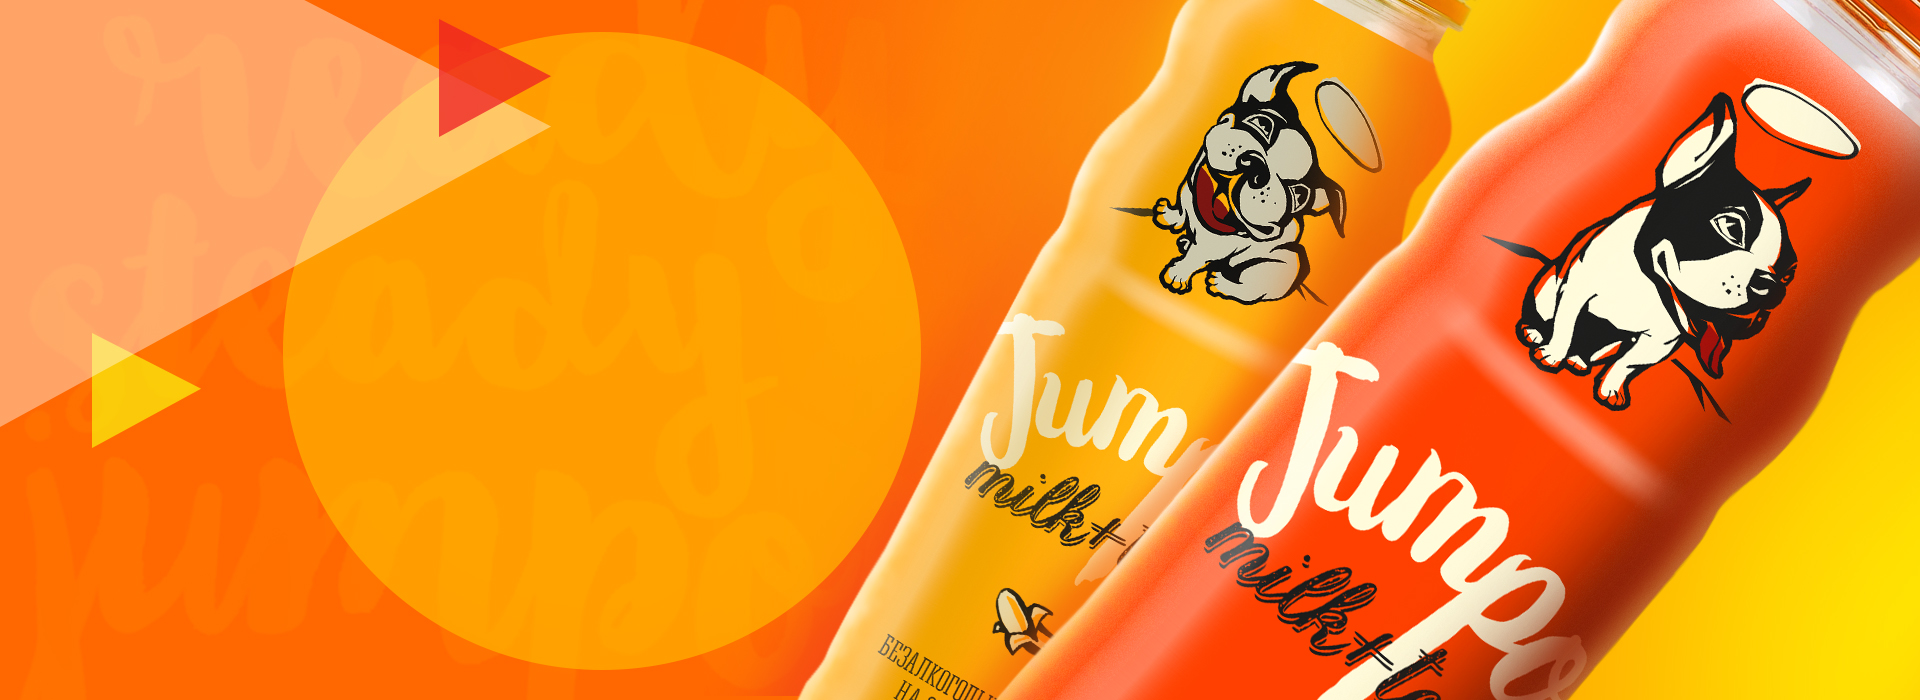 Jumpo, яркий и энергичный дизайн нового напитка — A.STUDIO